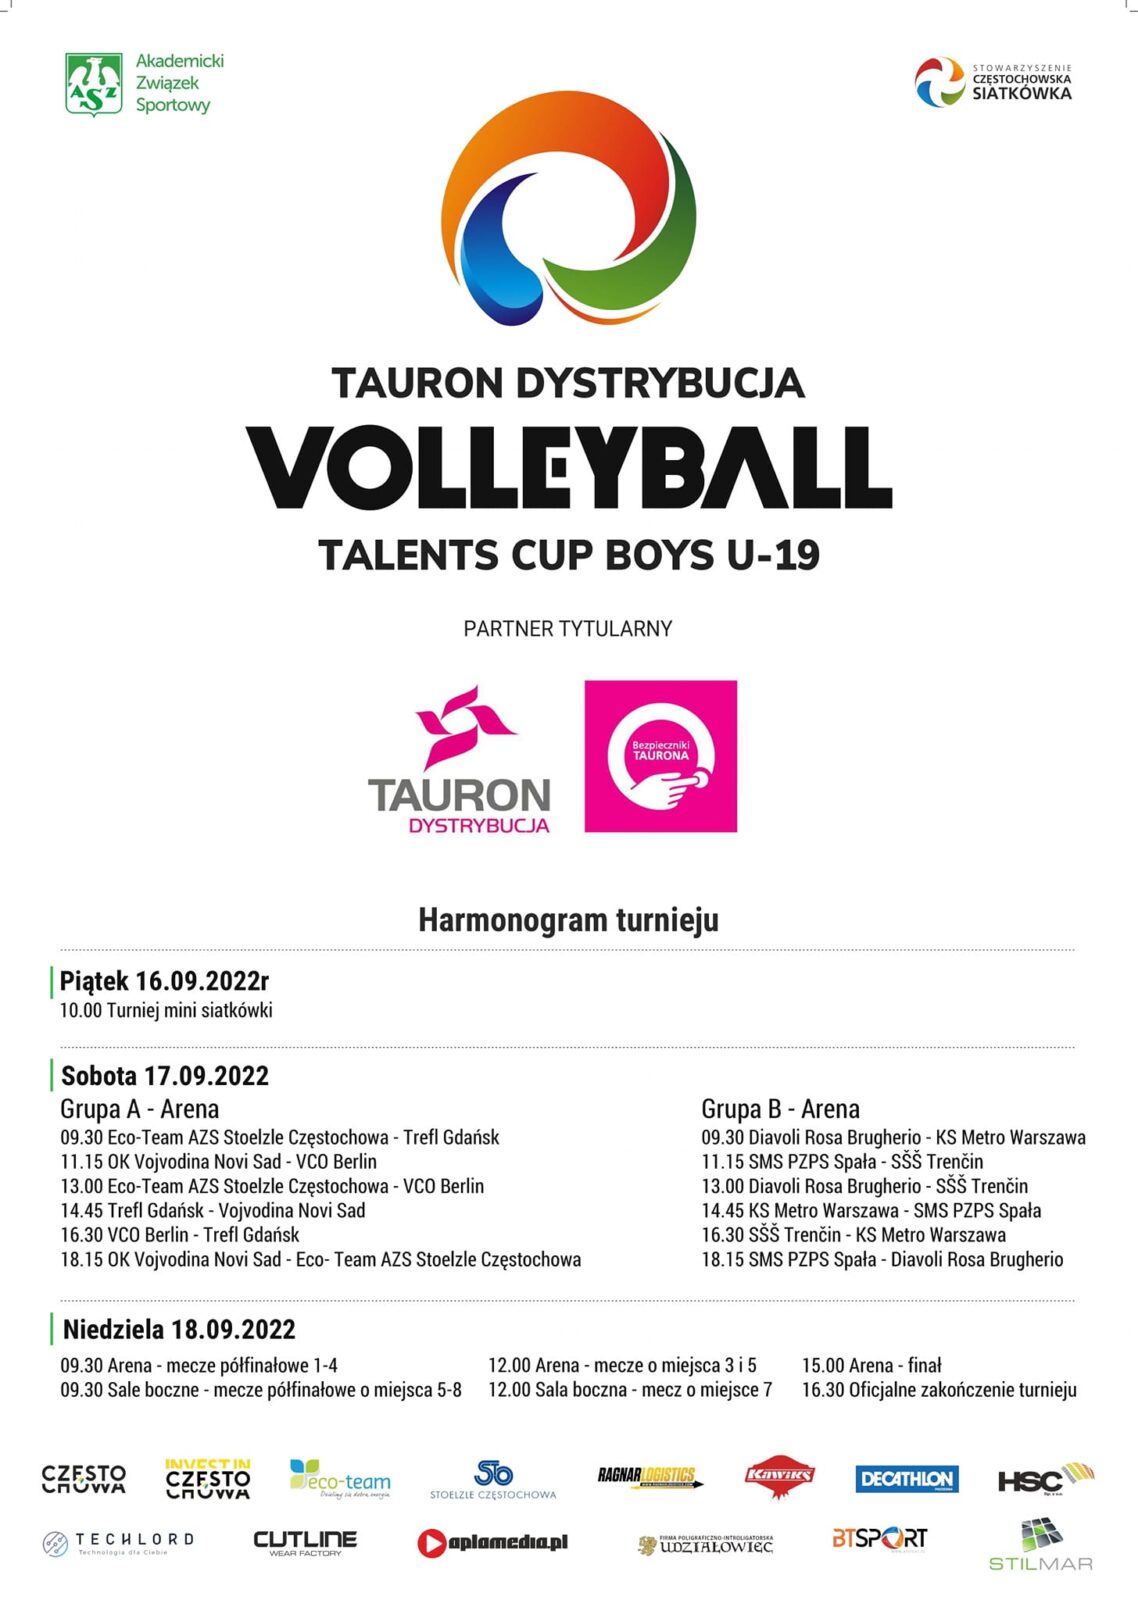 W Częstochowie odbędzie się międzynarodowy siatkarski turniej Tauron Dystrybucja Volleyball Talents Cup Boys U-19 7